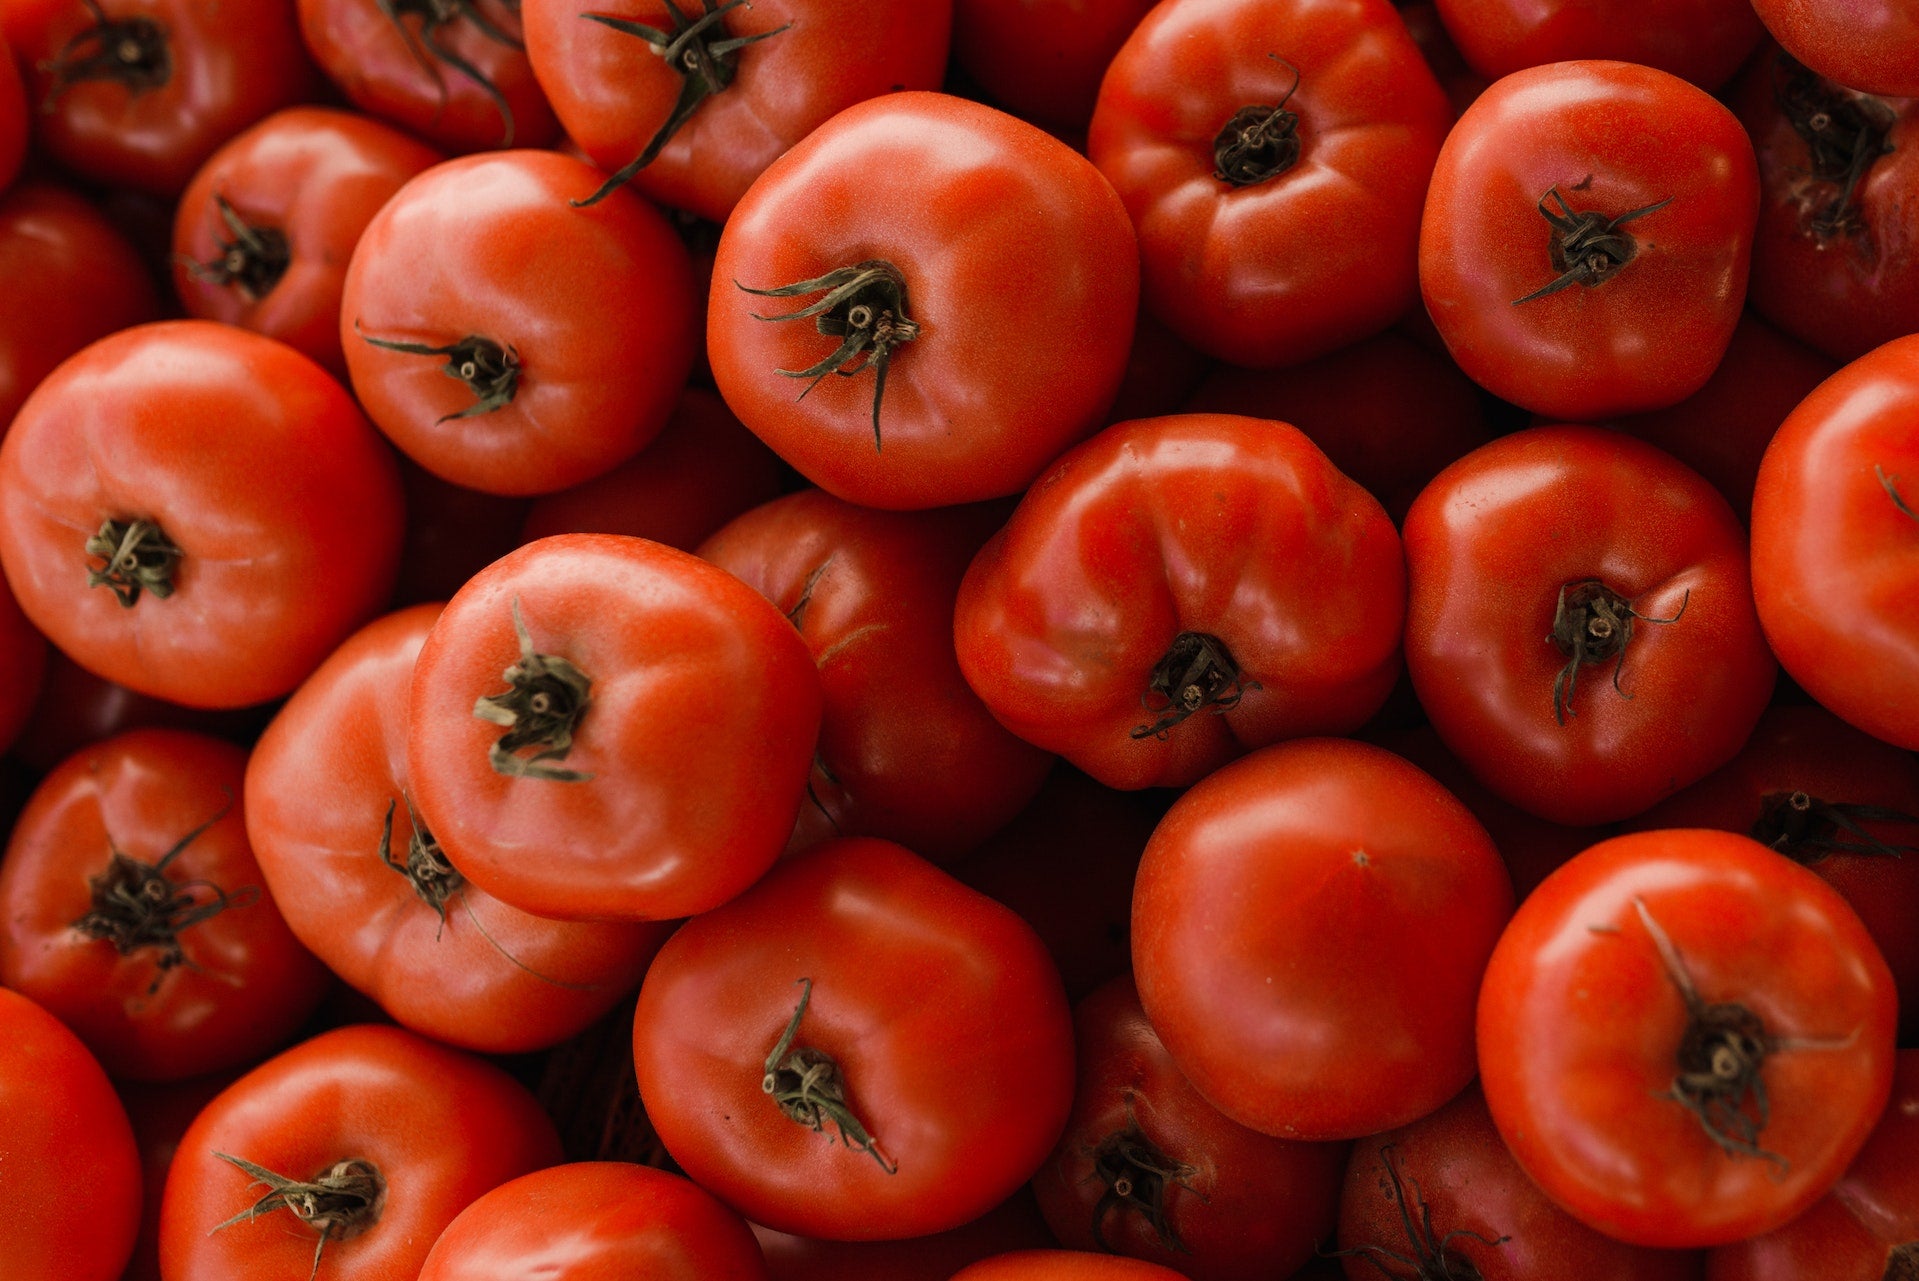 Beefsteak Tomatoes: The Juicy Giants of the Garden